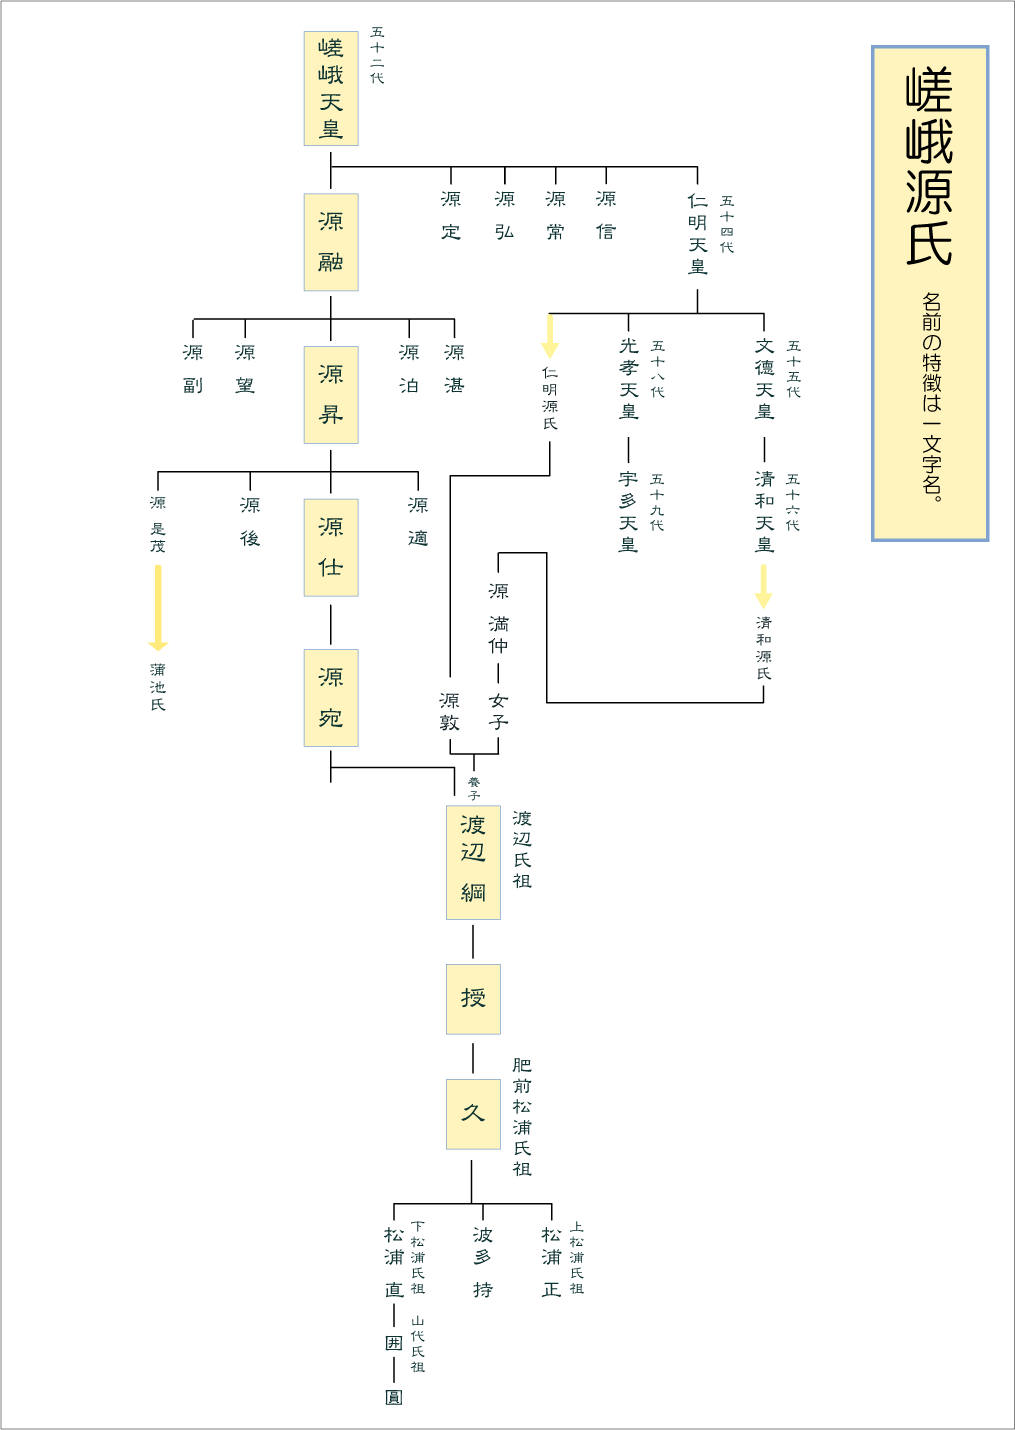 北条氏 源氏 家系図